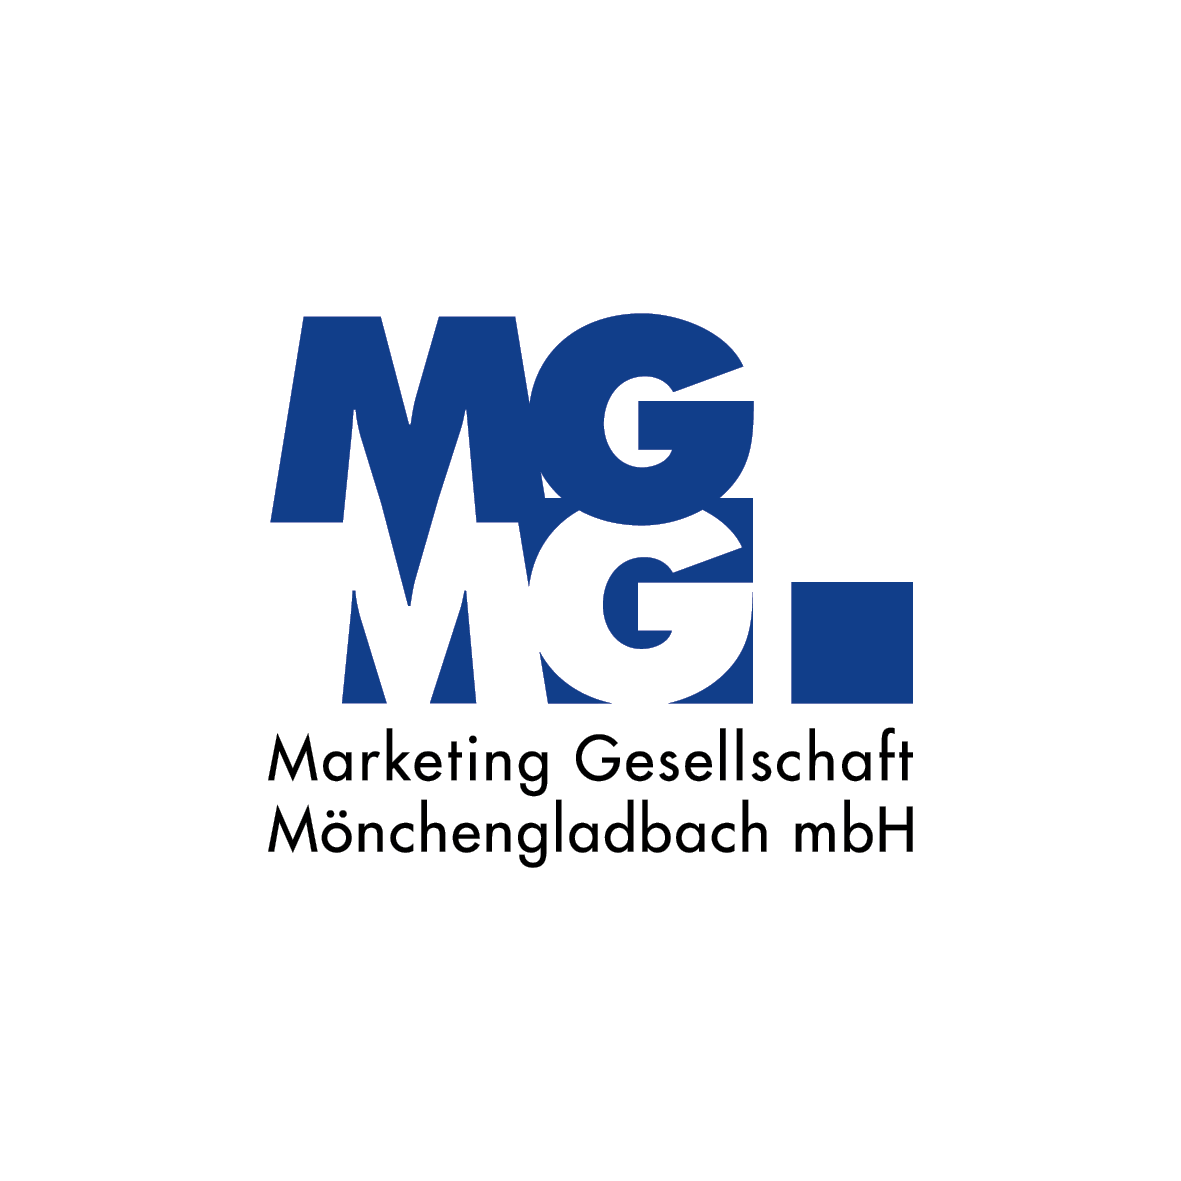 gruen_mg_logos_10x10cm9.png